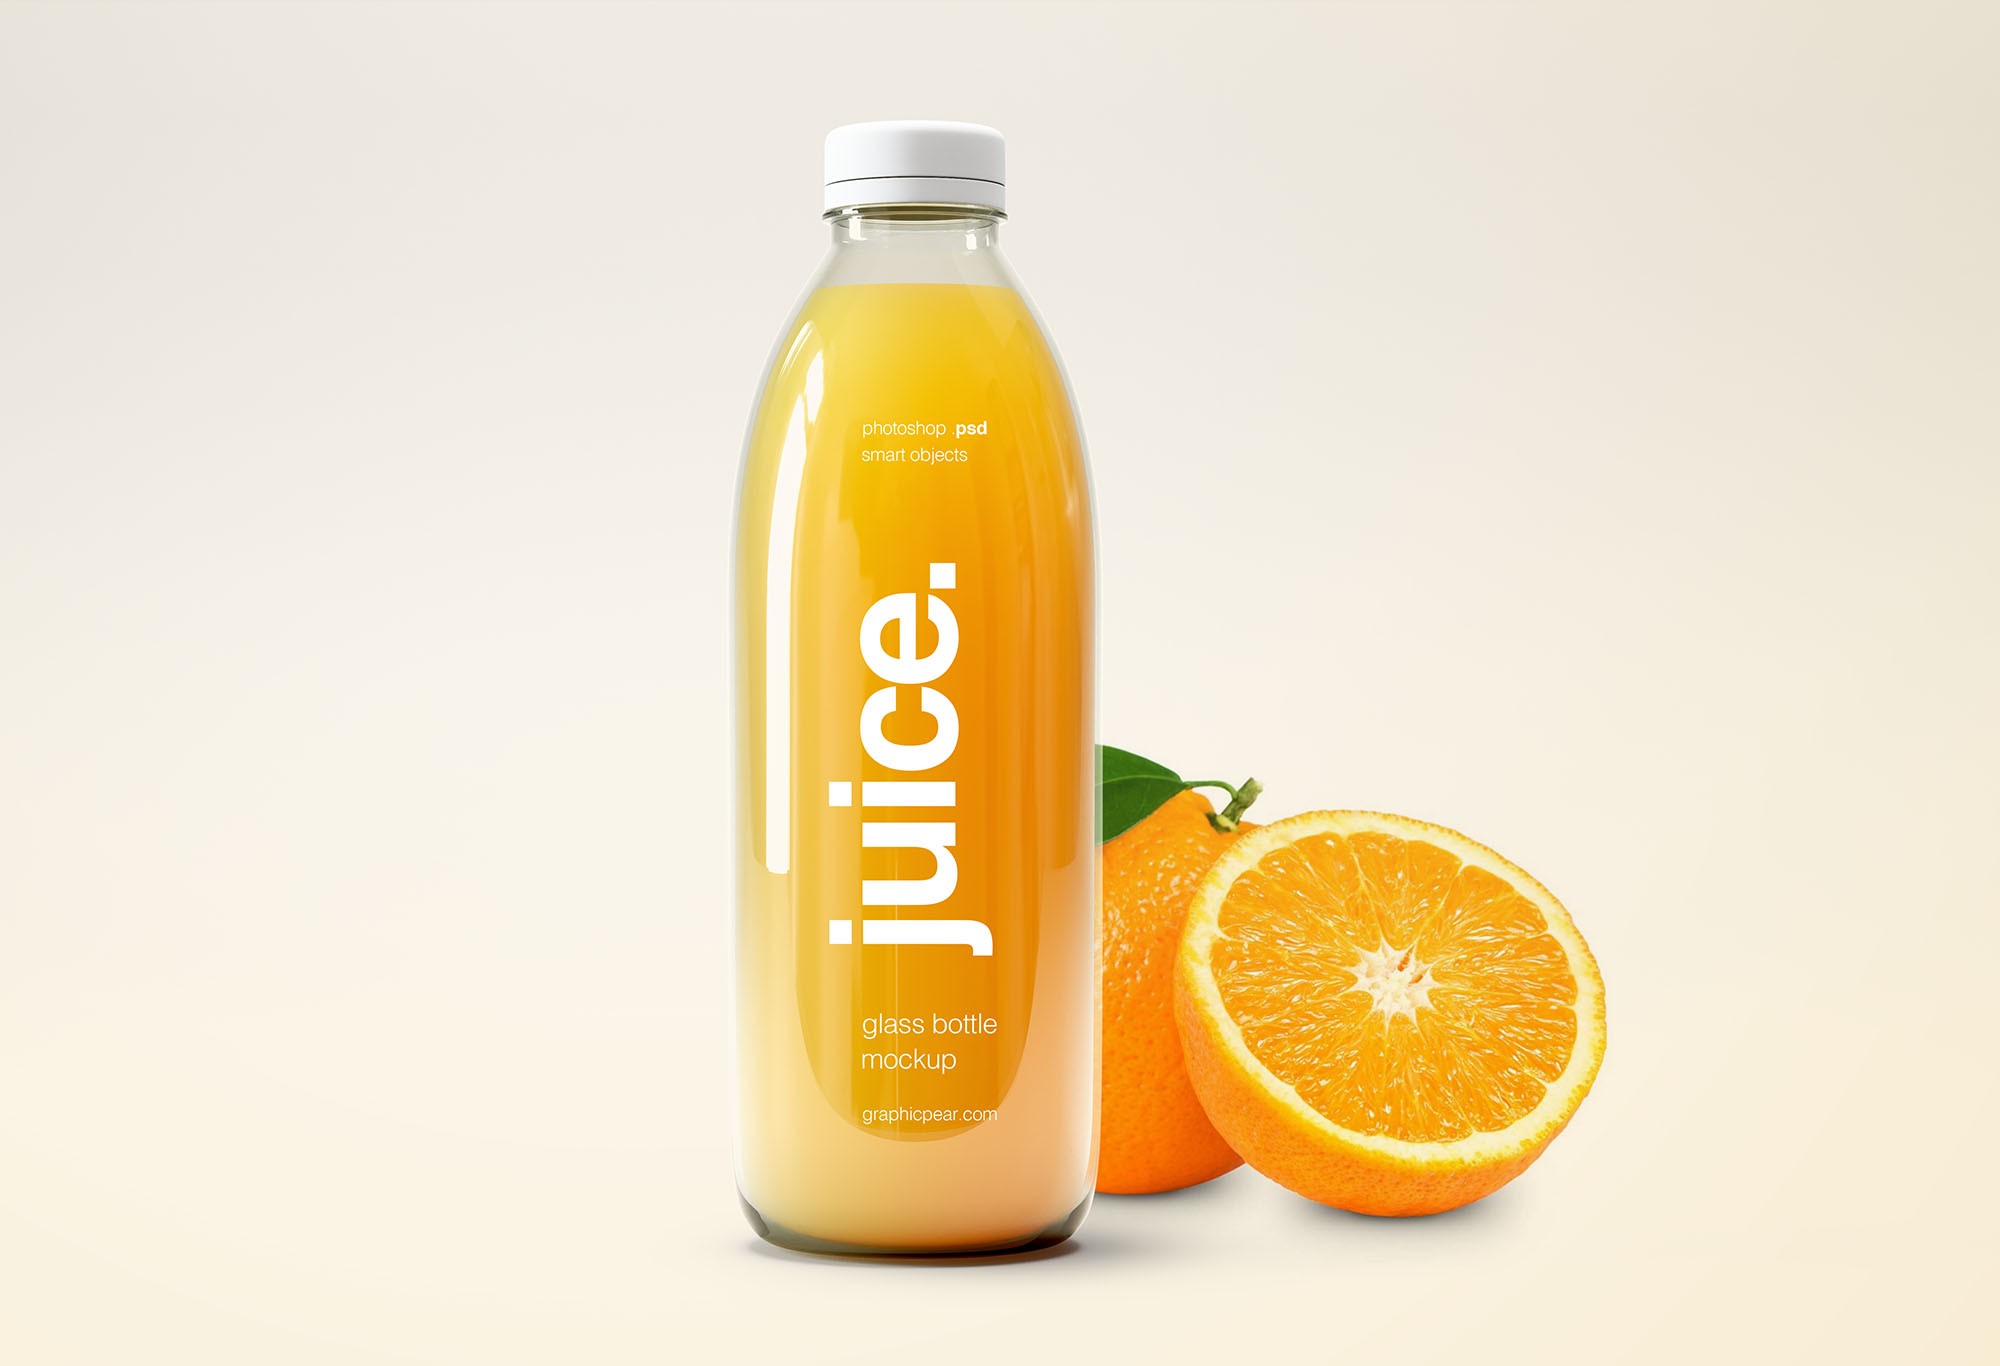 Free-Juice-Bottle-Mockup-with-Orange.jpg